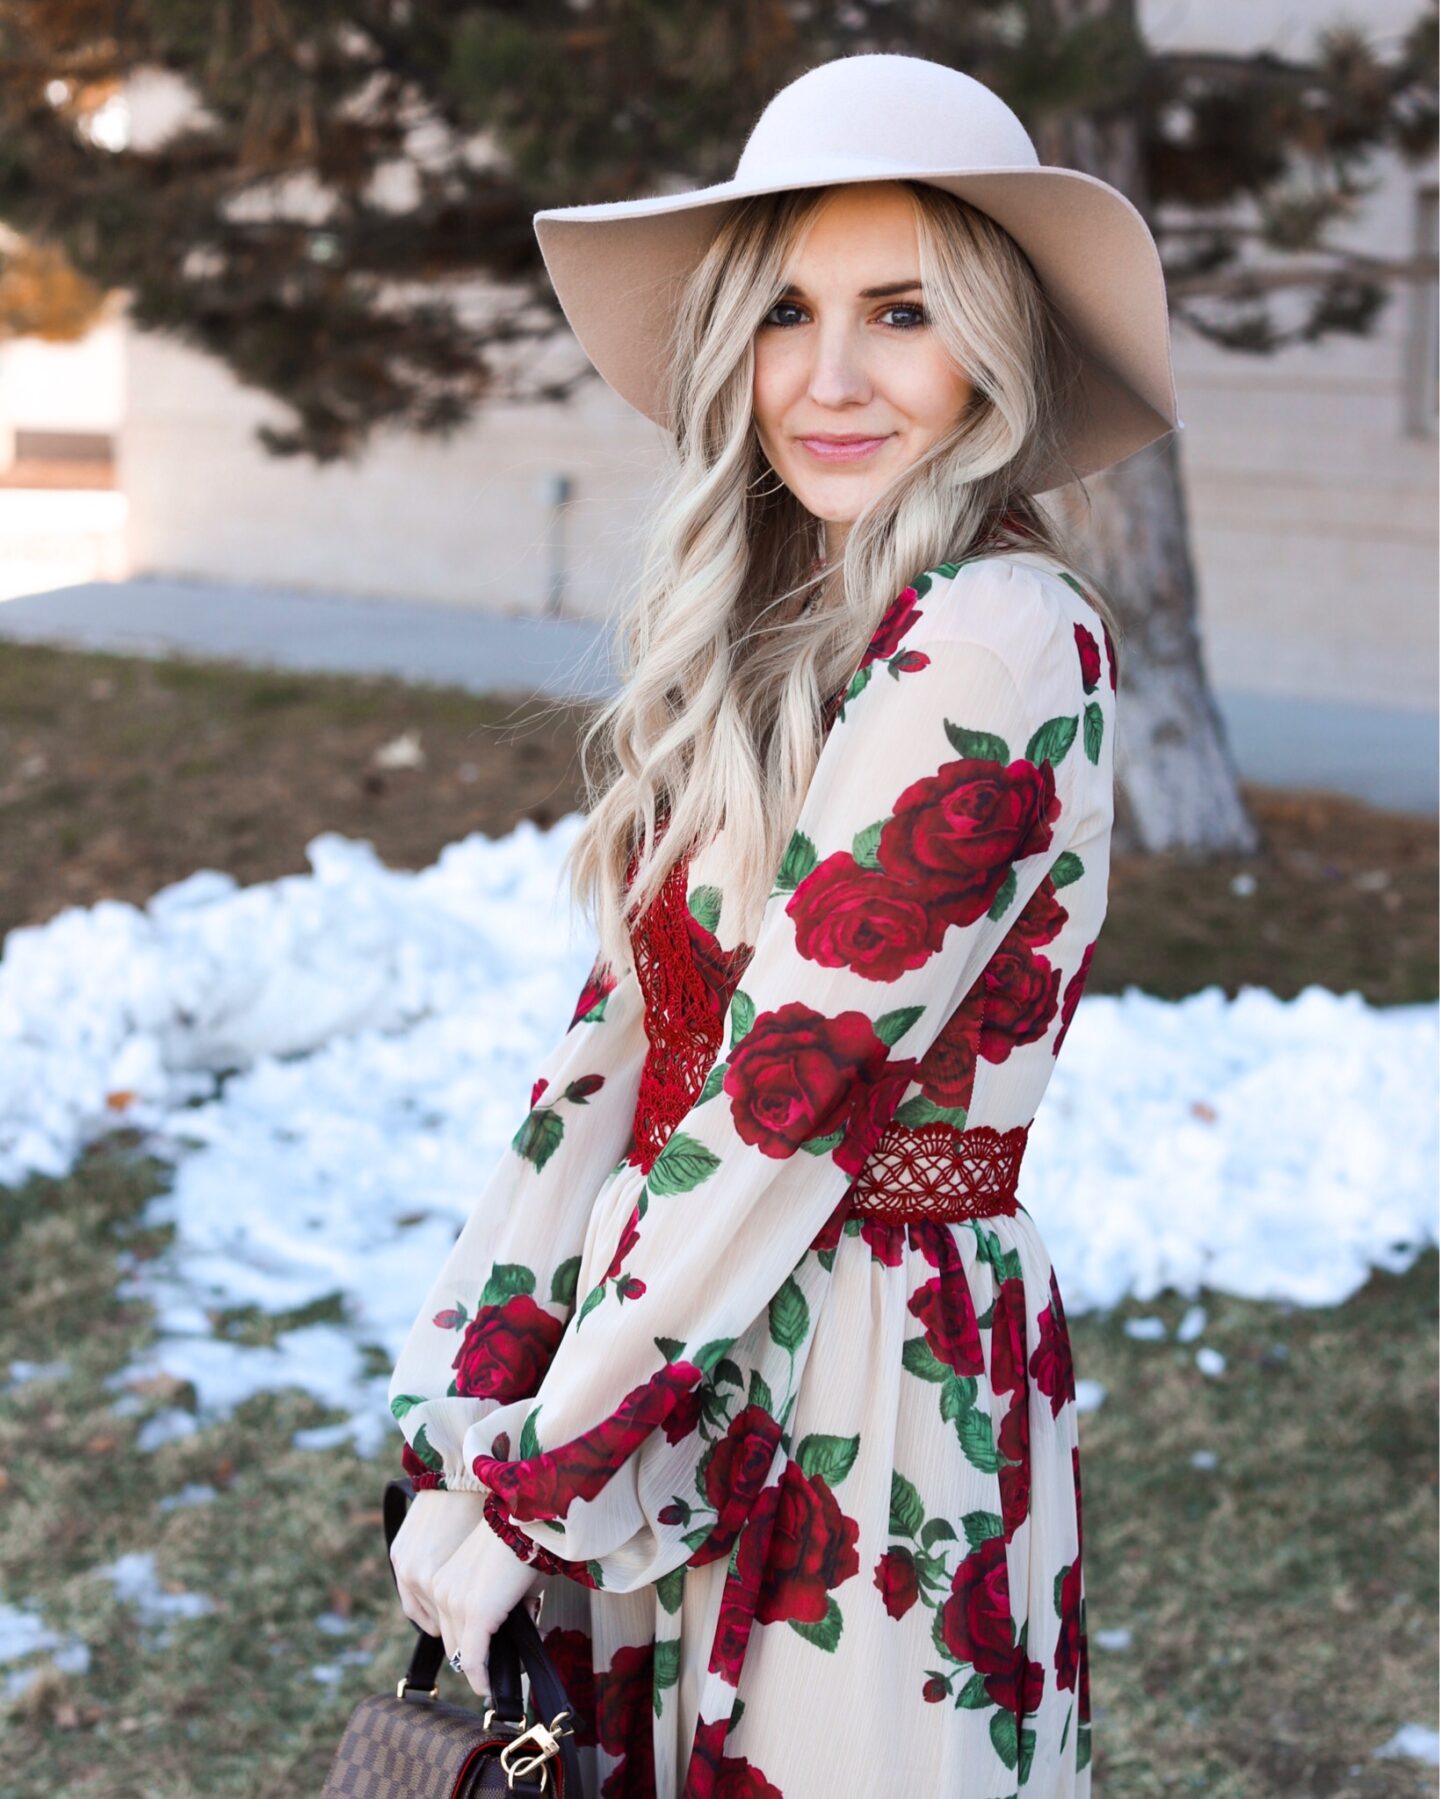 holiday rose dress – styled 3 ways